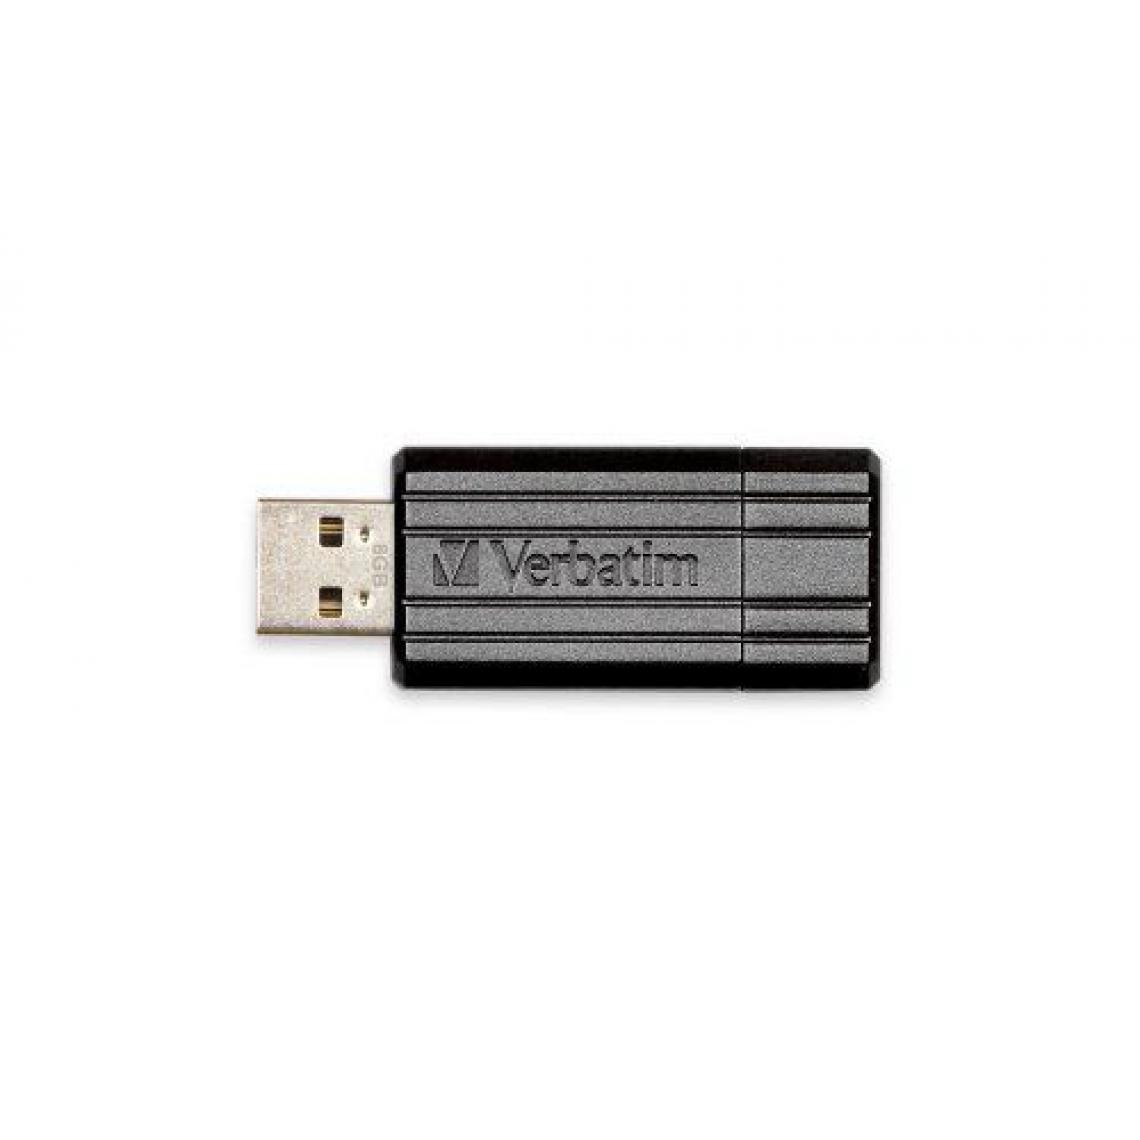 Sony Pictures Home Entertainment - Verbatim Pinstripe Clé USB Drive 2.0 8 Go Noir - Clés USB